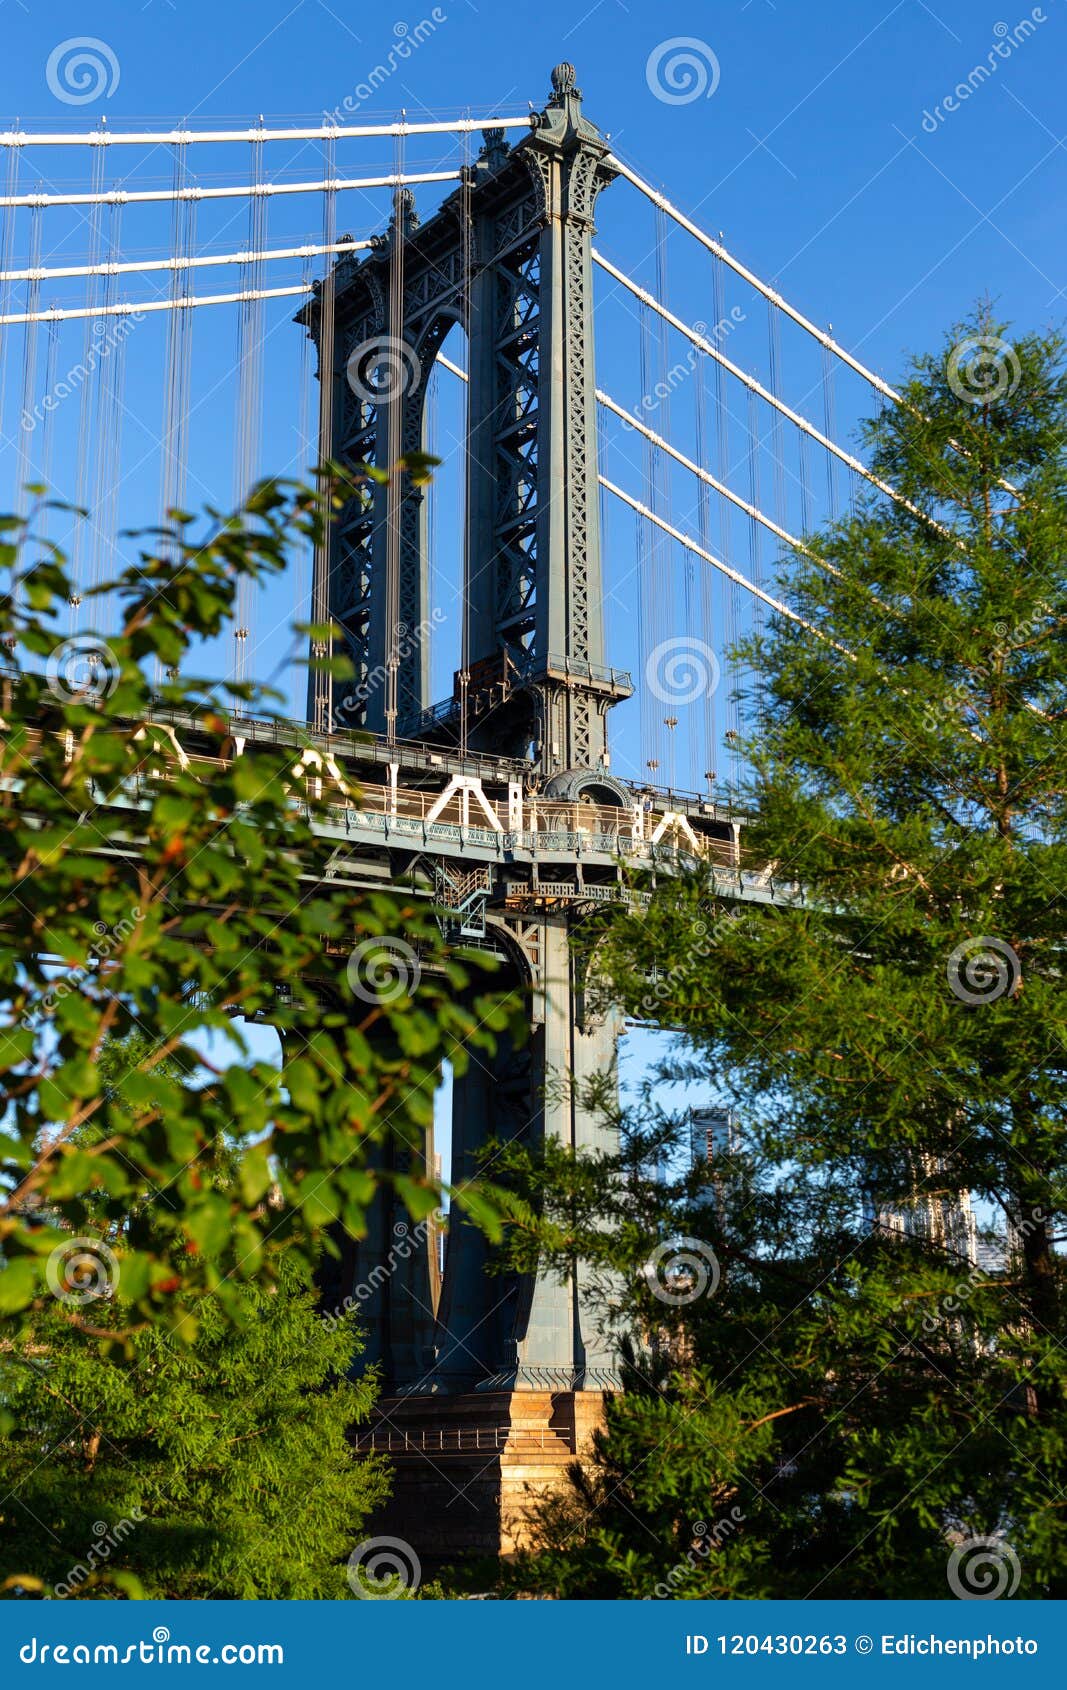 New York City / USA - JUN 25 2018: Brooklyn Bridge Park at Sunrise ...